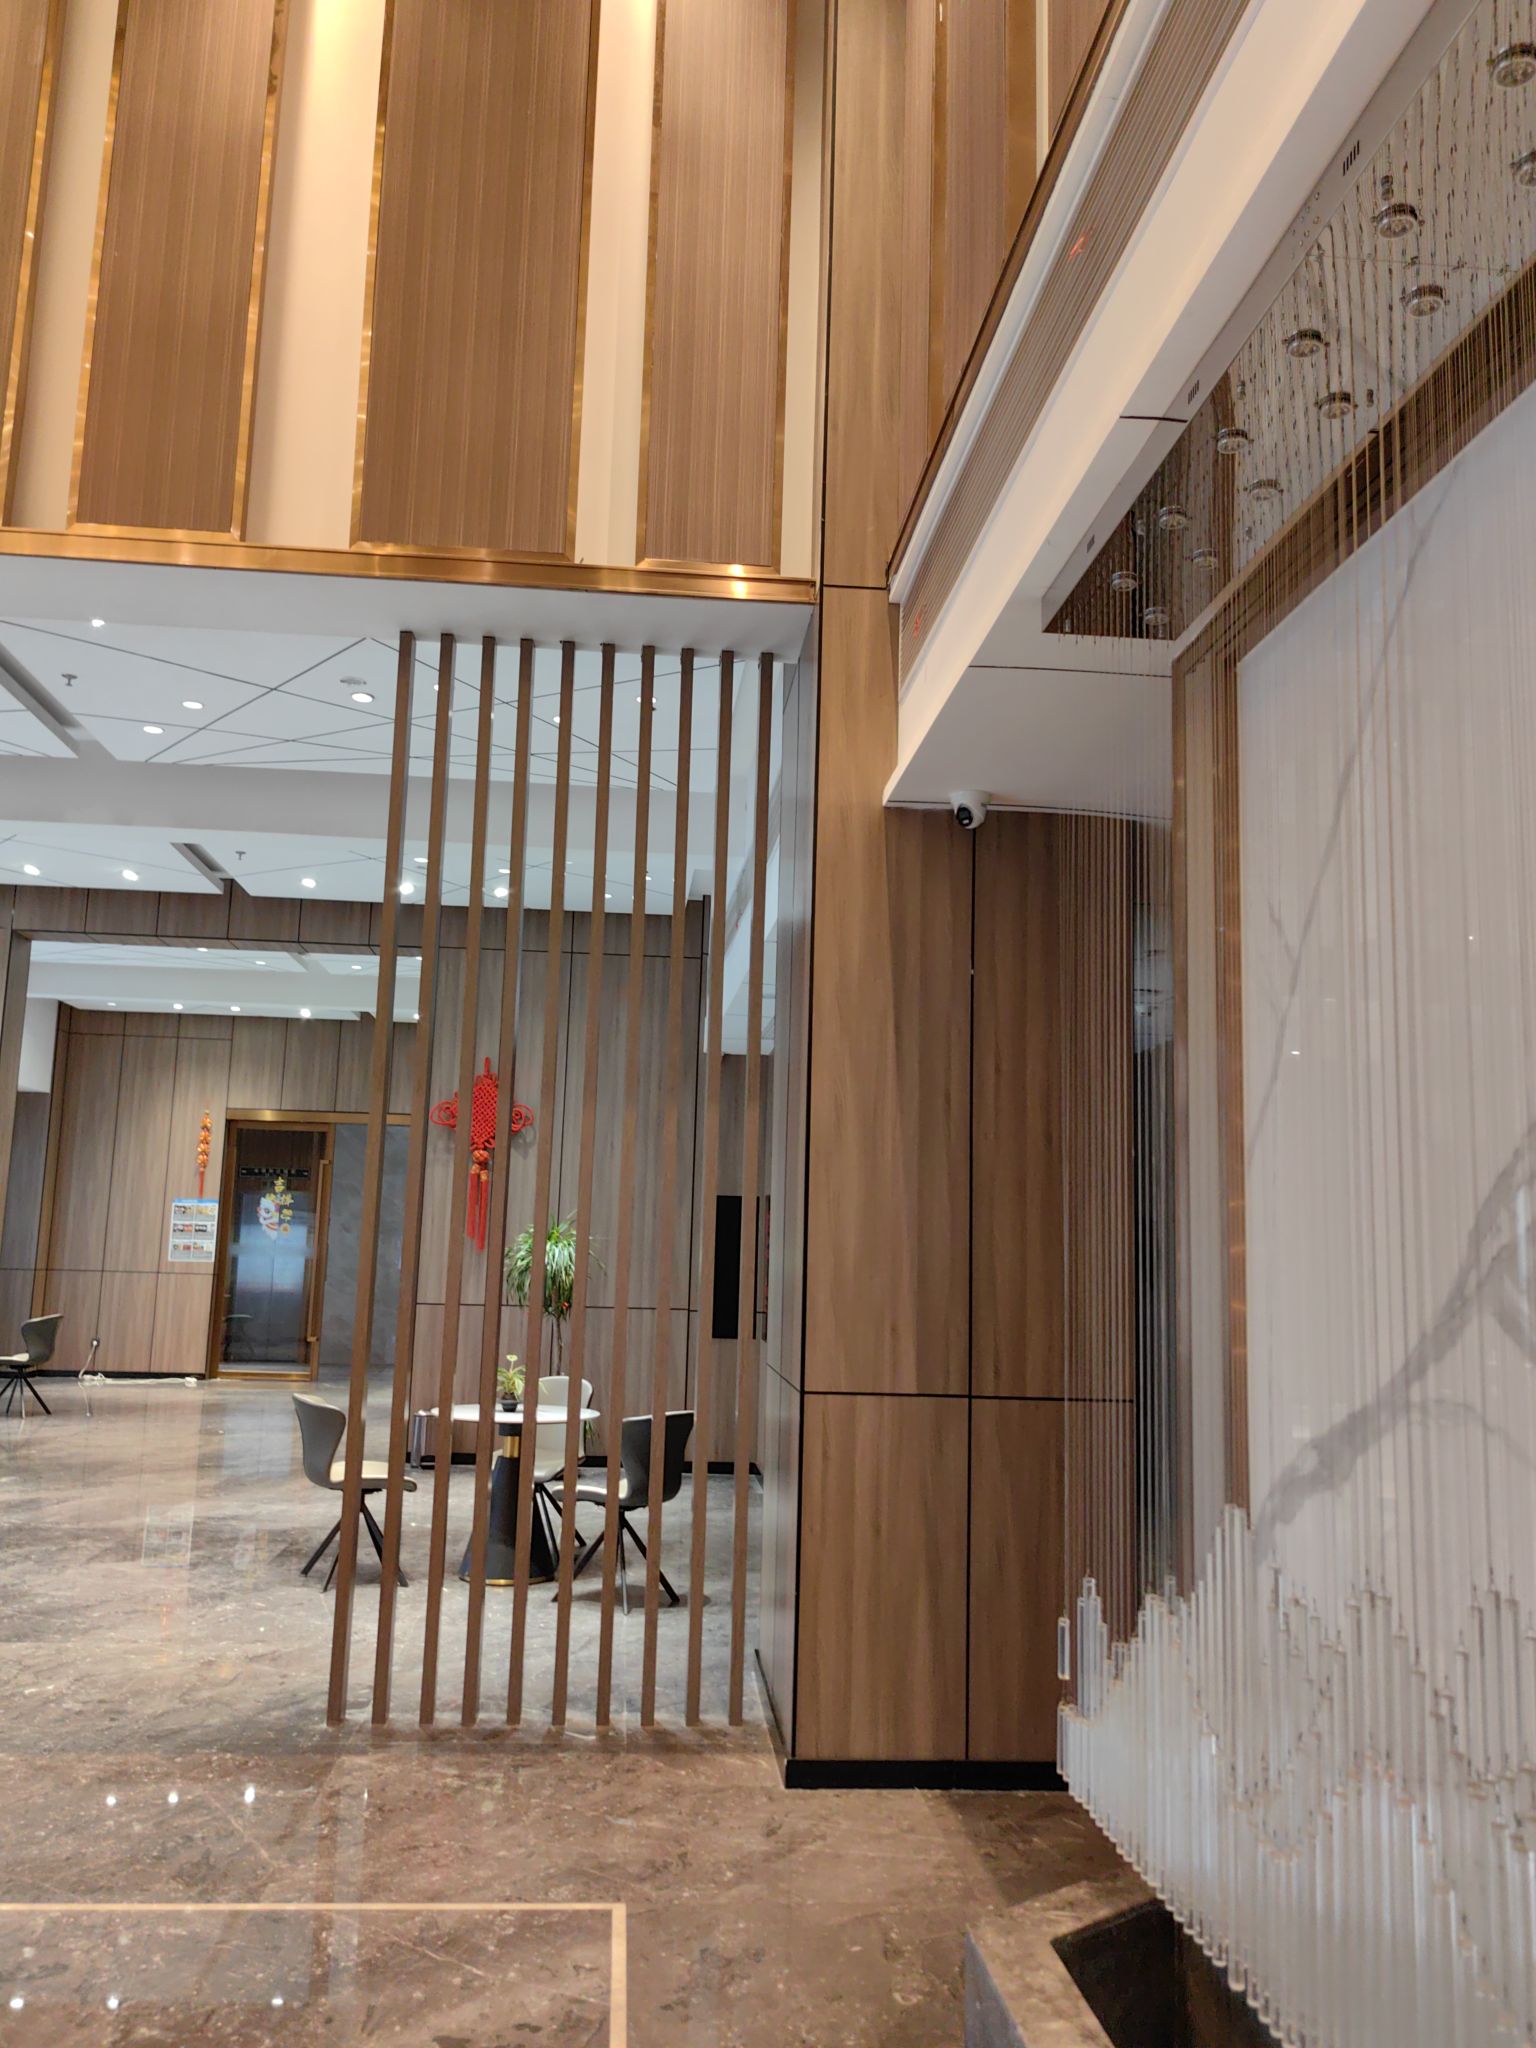 湘潭麦克达温德姆酒店无疑是这座城市中一颗璀璨的明珠。他以无比伦比的舒适度和卓越的服务，让每一位客人都